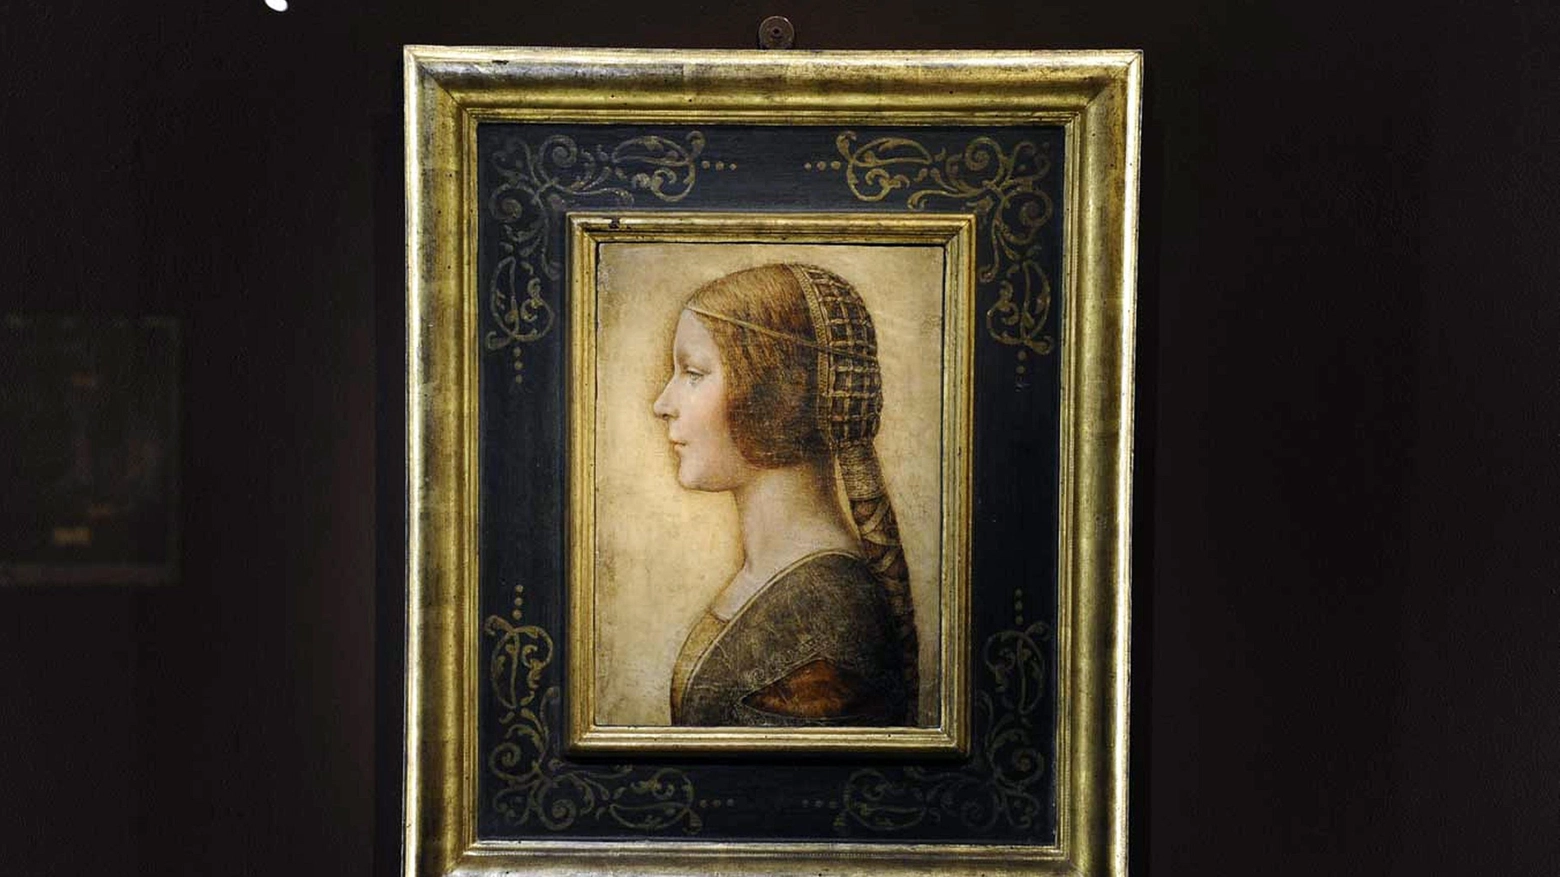 Il ritratto 'La bella principessa' di Leonardo da Vinci, esposto alla Villa Reale di Monza